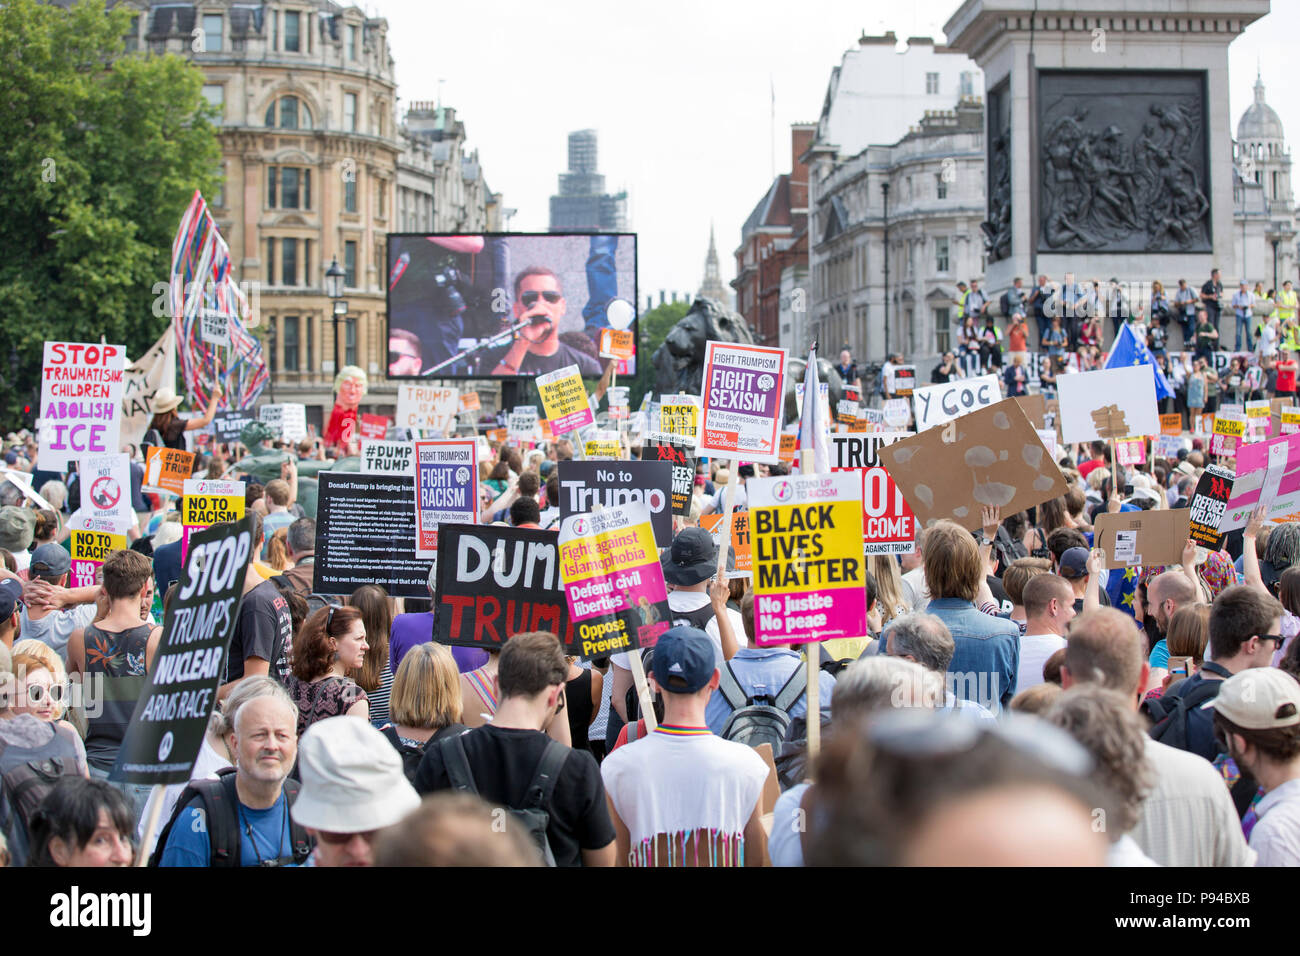 Die Demonstranten beim Karneval der Widerstand, den anti-Trumpf-Protest in London organisiert, Großbritannien am 13. Juli 2018. Stockfoto